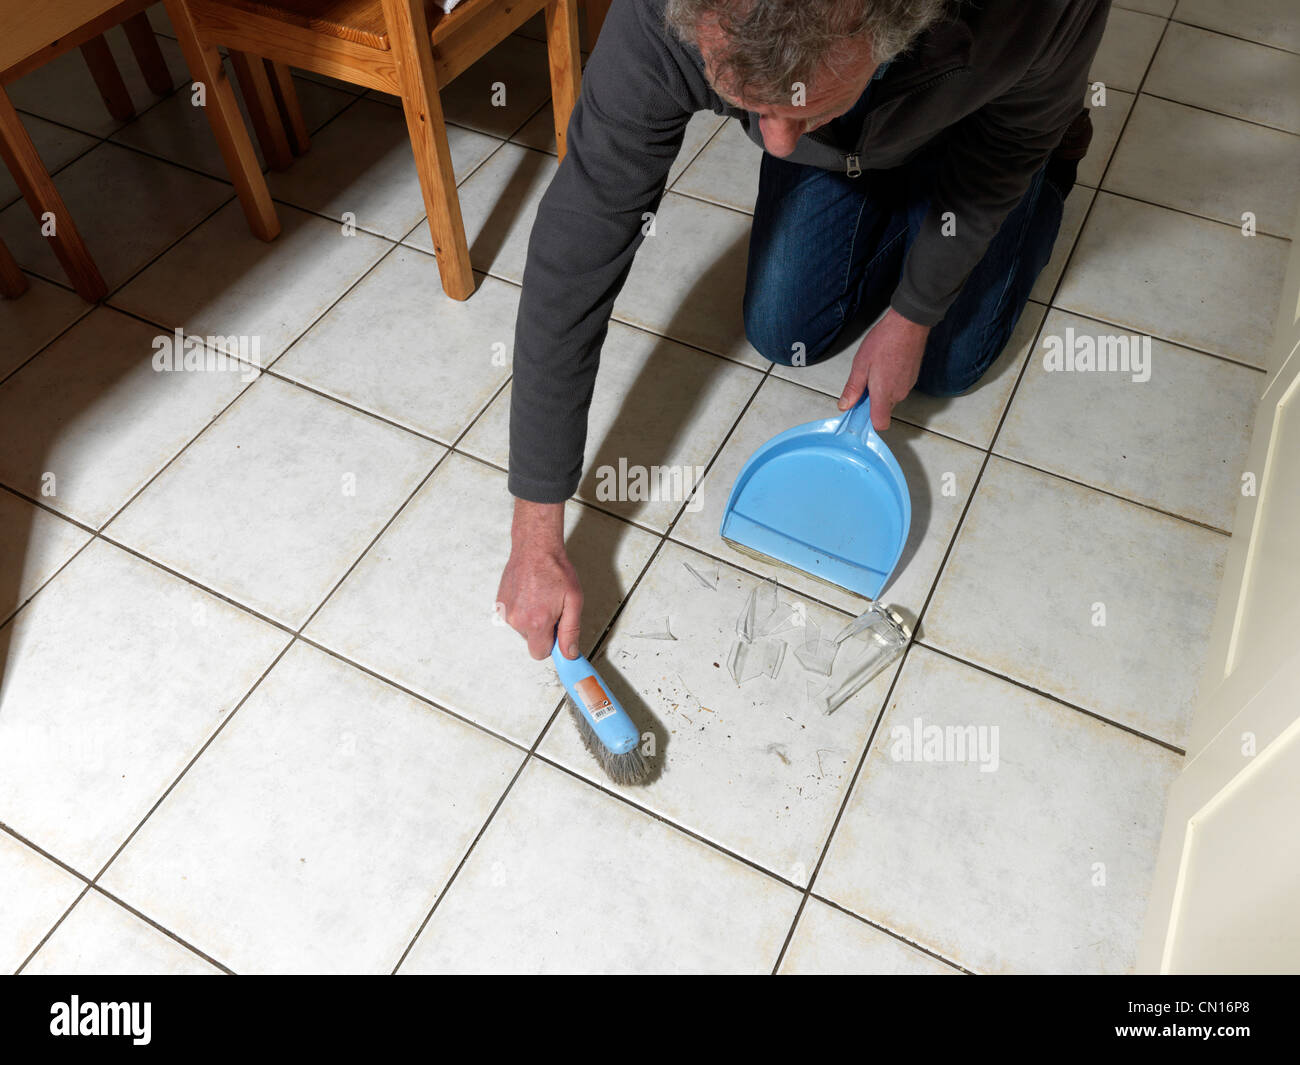 Nettoyage homme bris de glace de la parole à l'aide de Pelle et brosse Banque D'Images